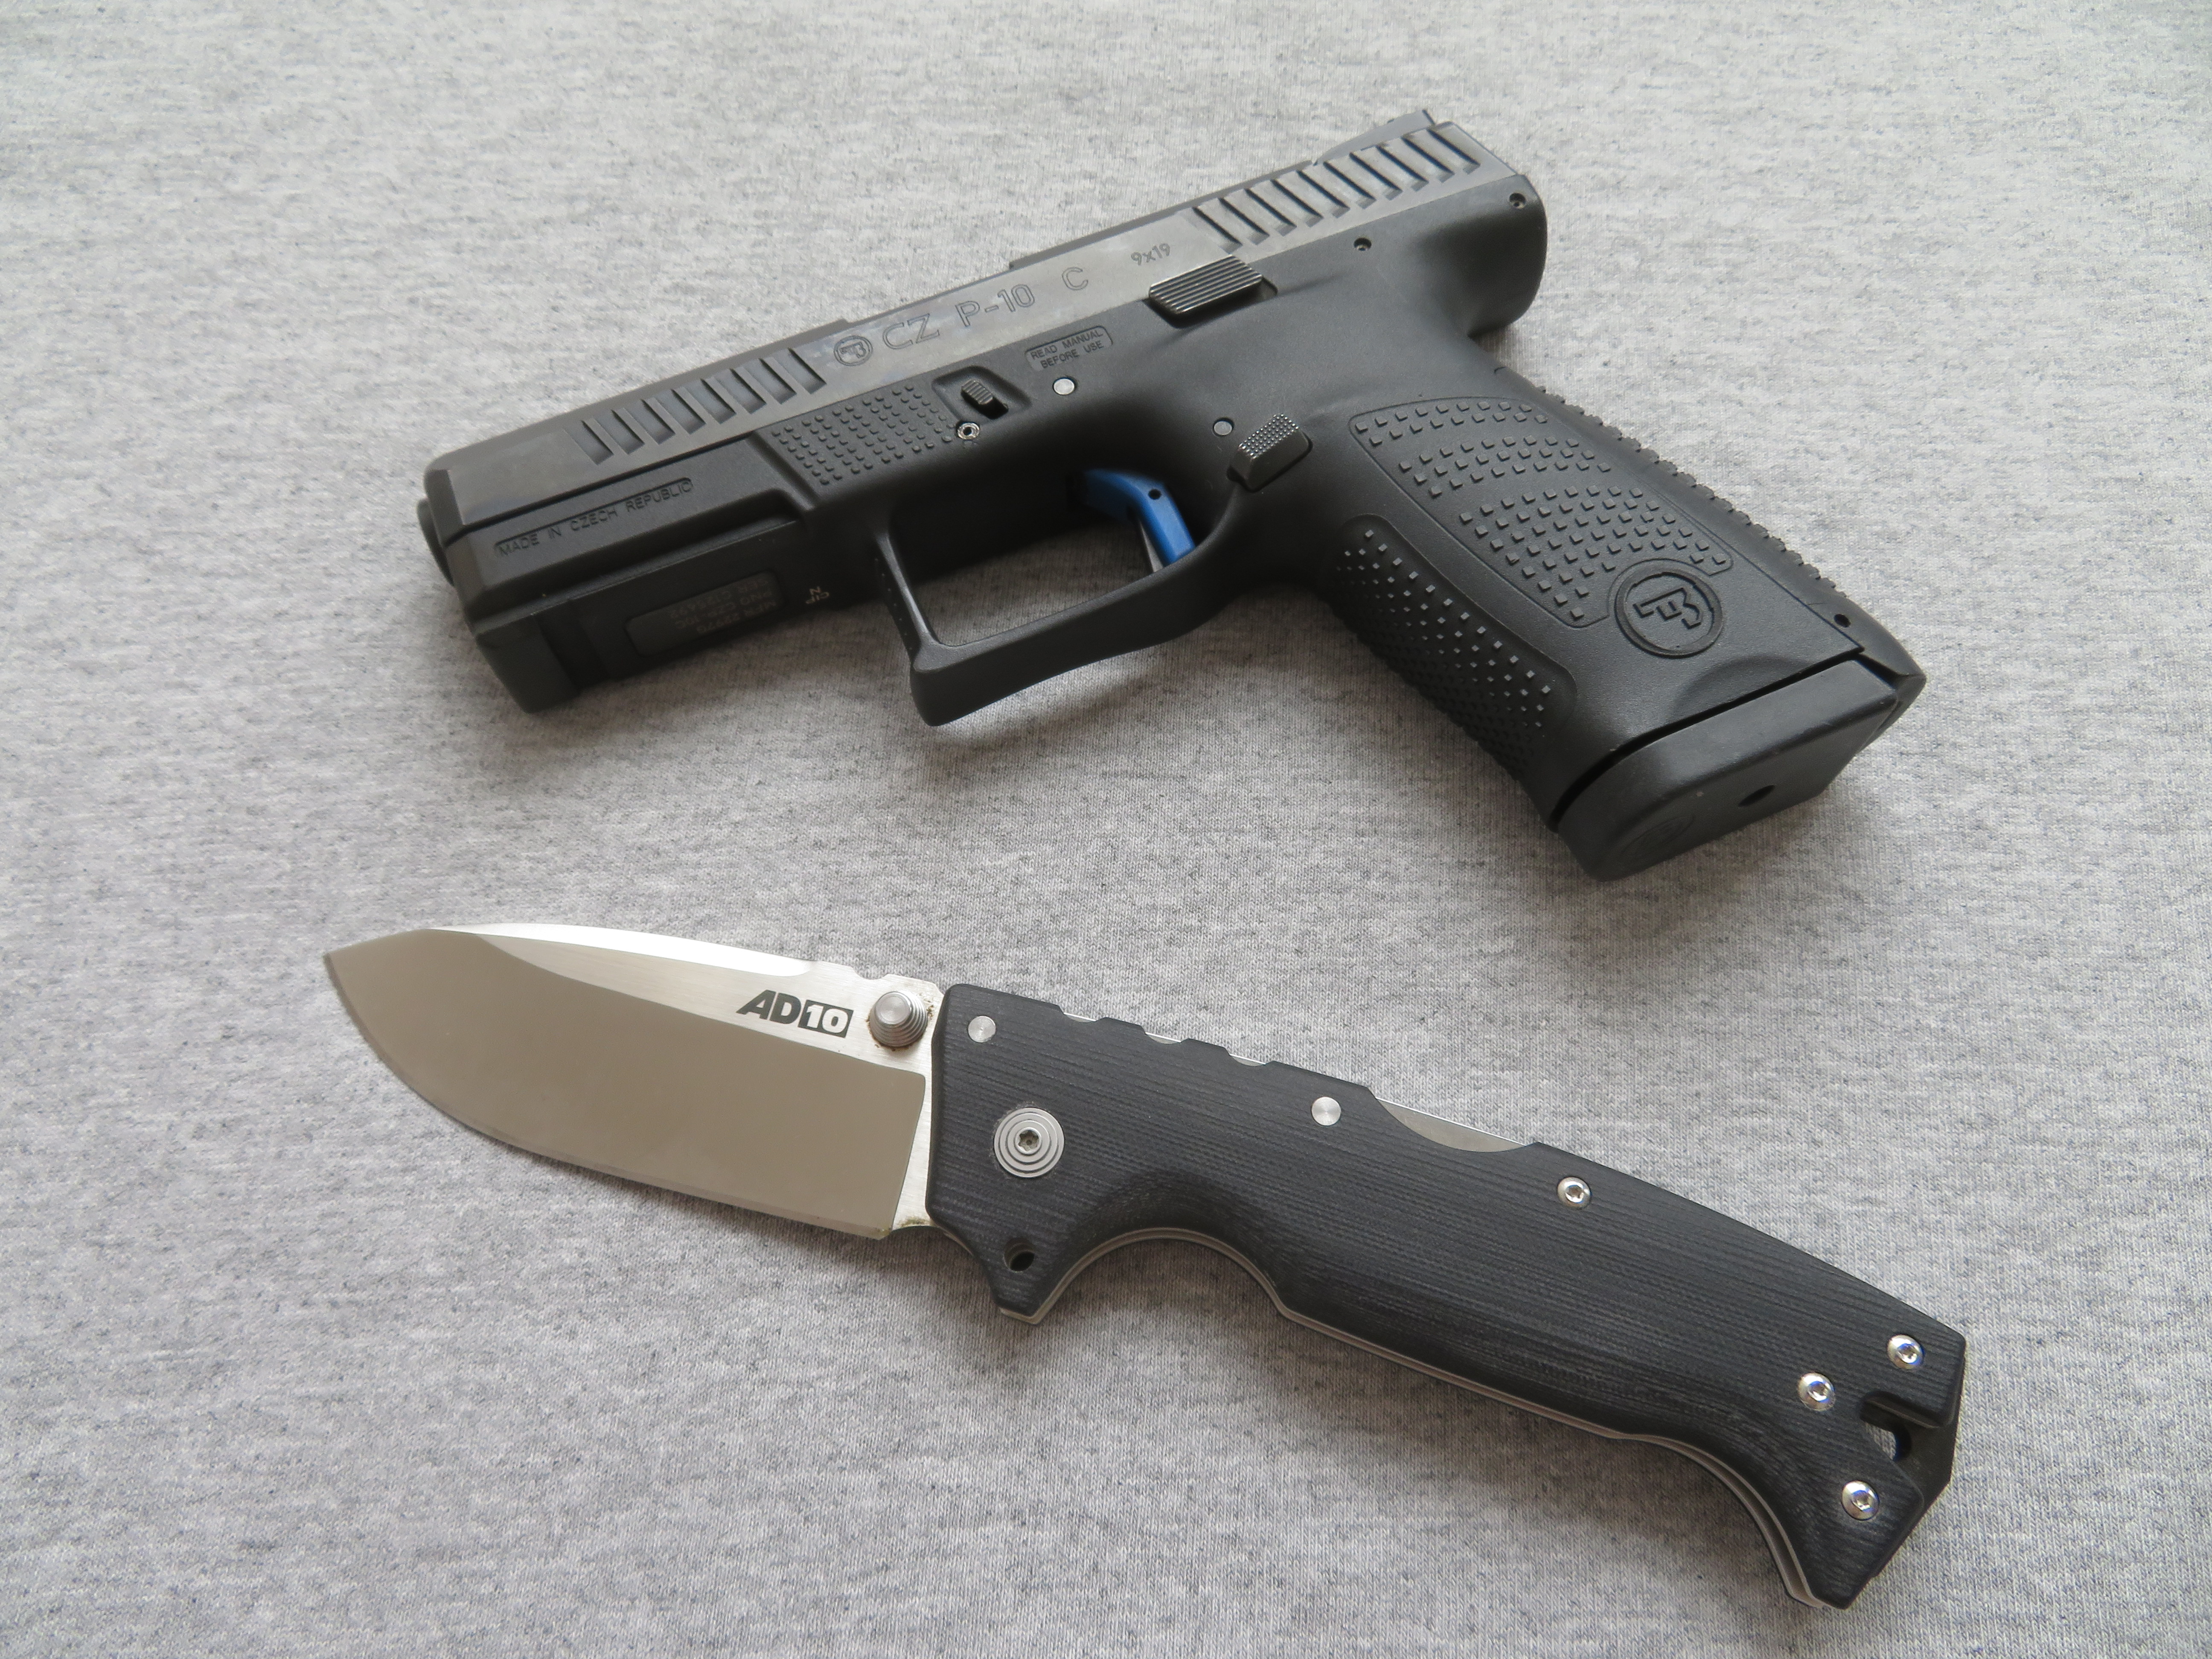 Moderní zavírací nůž AD-10 od společnosti Cold Steel a moderní samonabíjecí pistole CZ P-10 C z Uherského Brodu.